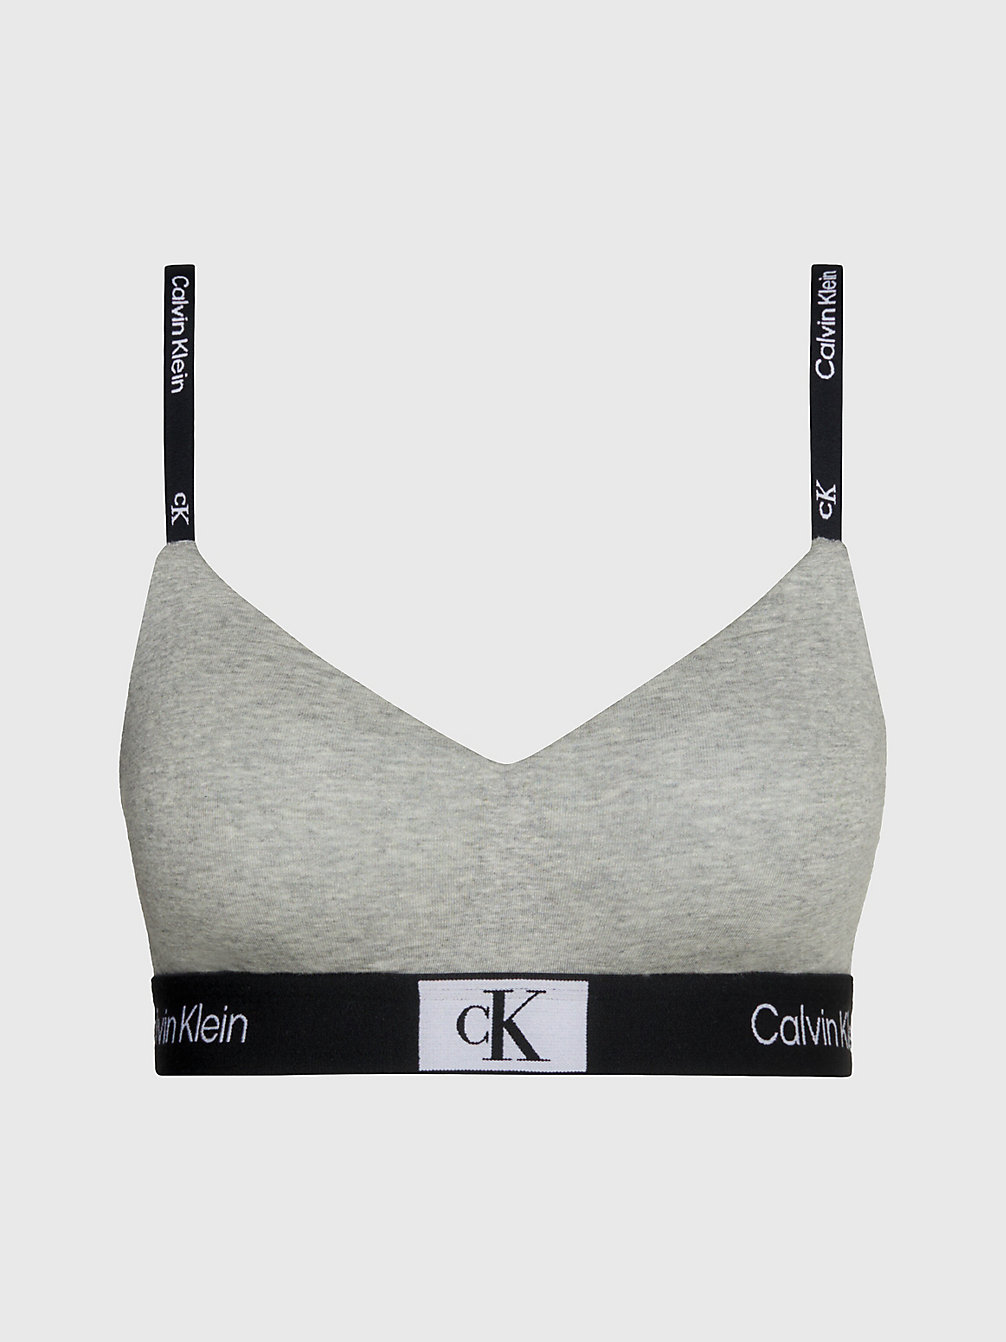 GREY HEATHER String Bralette - Ck96 undefined women Calvin Klein